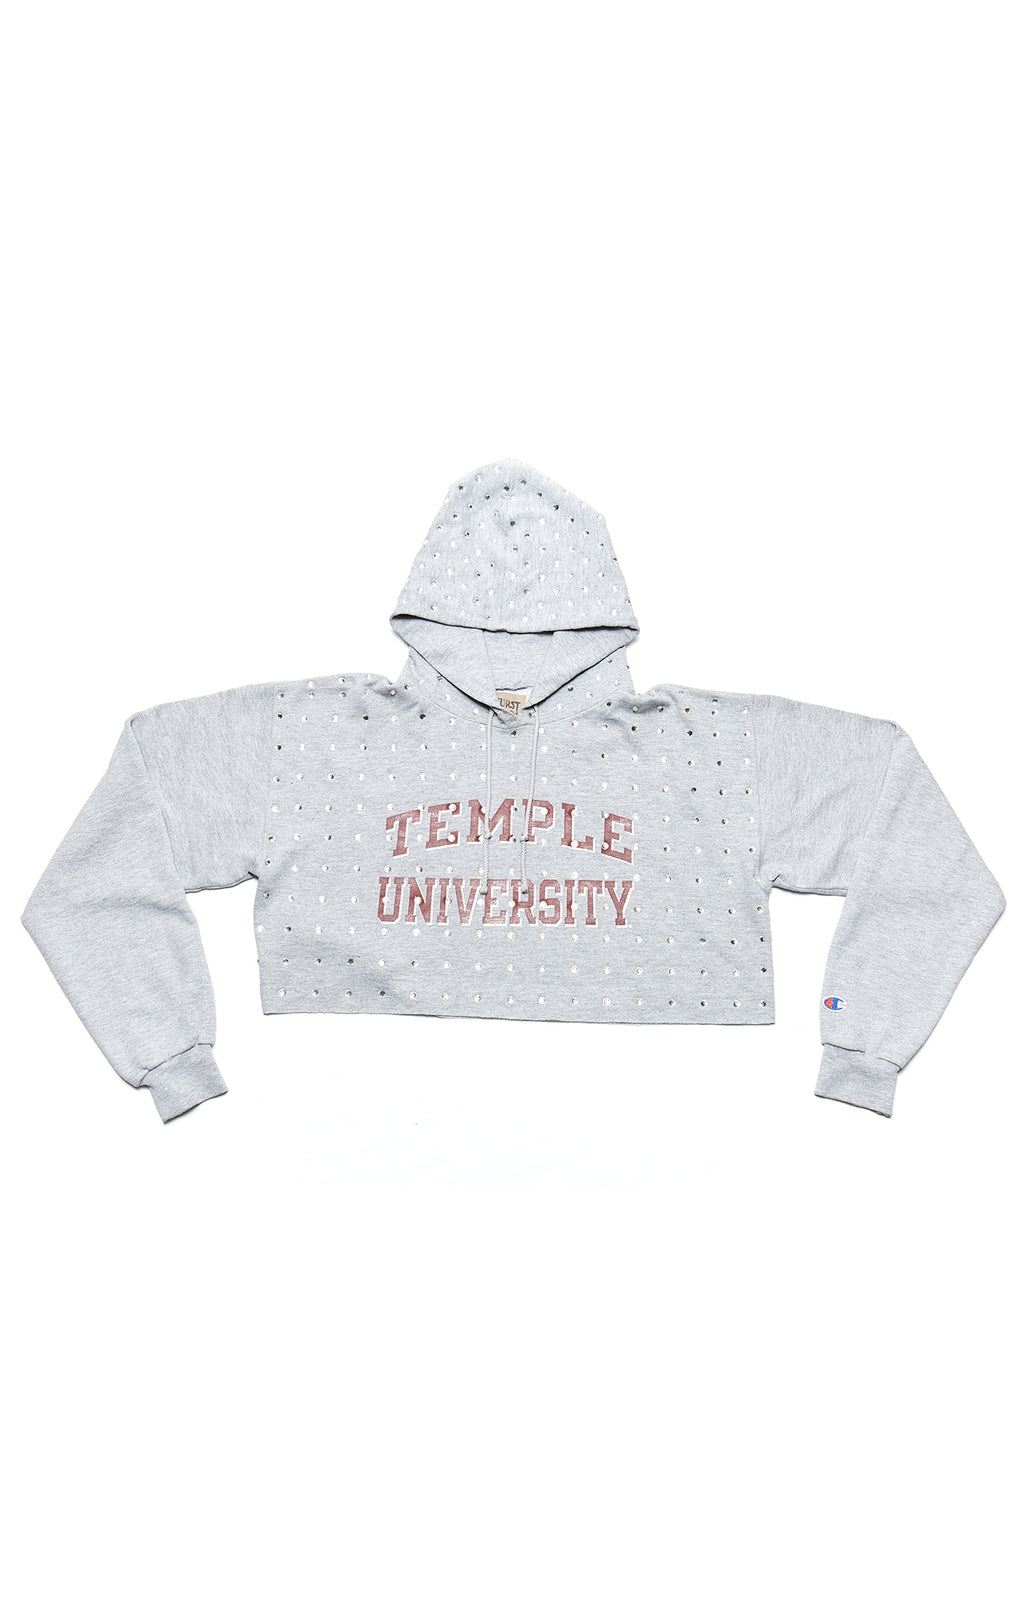 vintage temple university sweatshirt